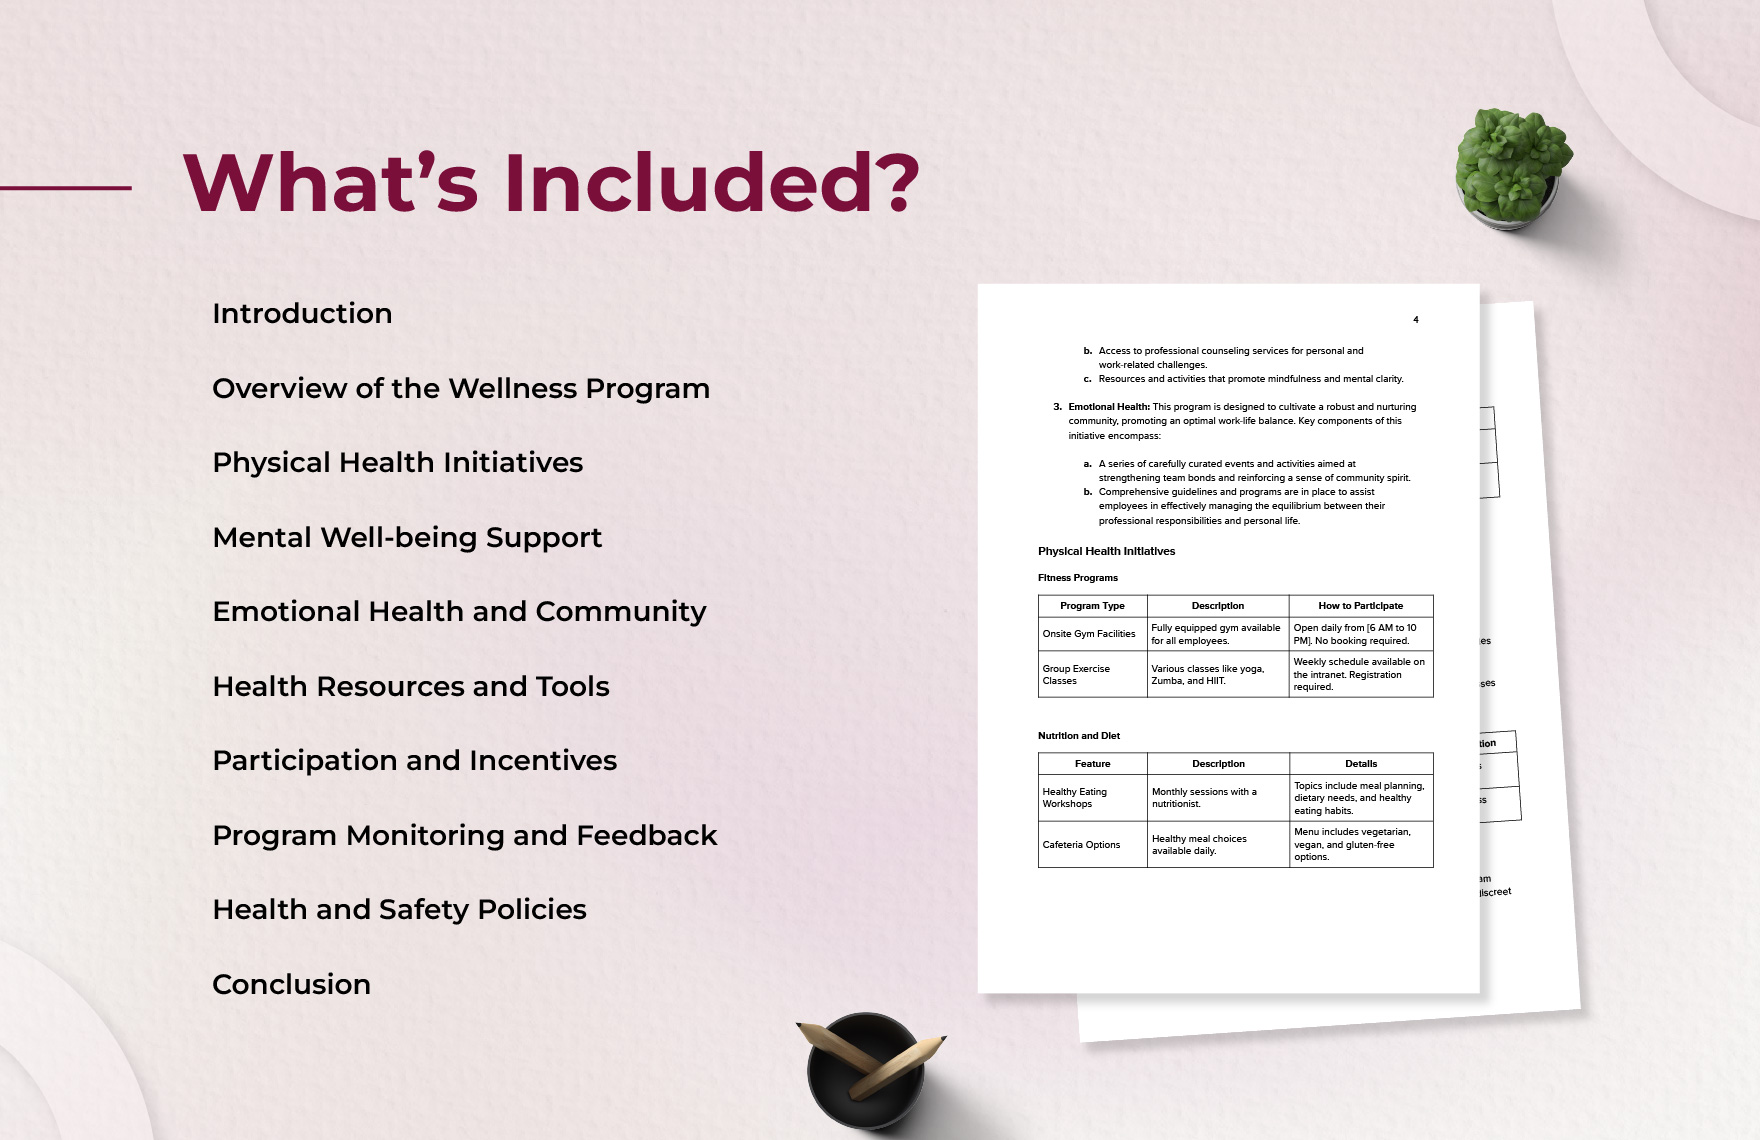 Employee Wellness Program User Guide Template